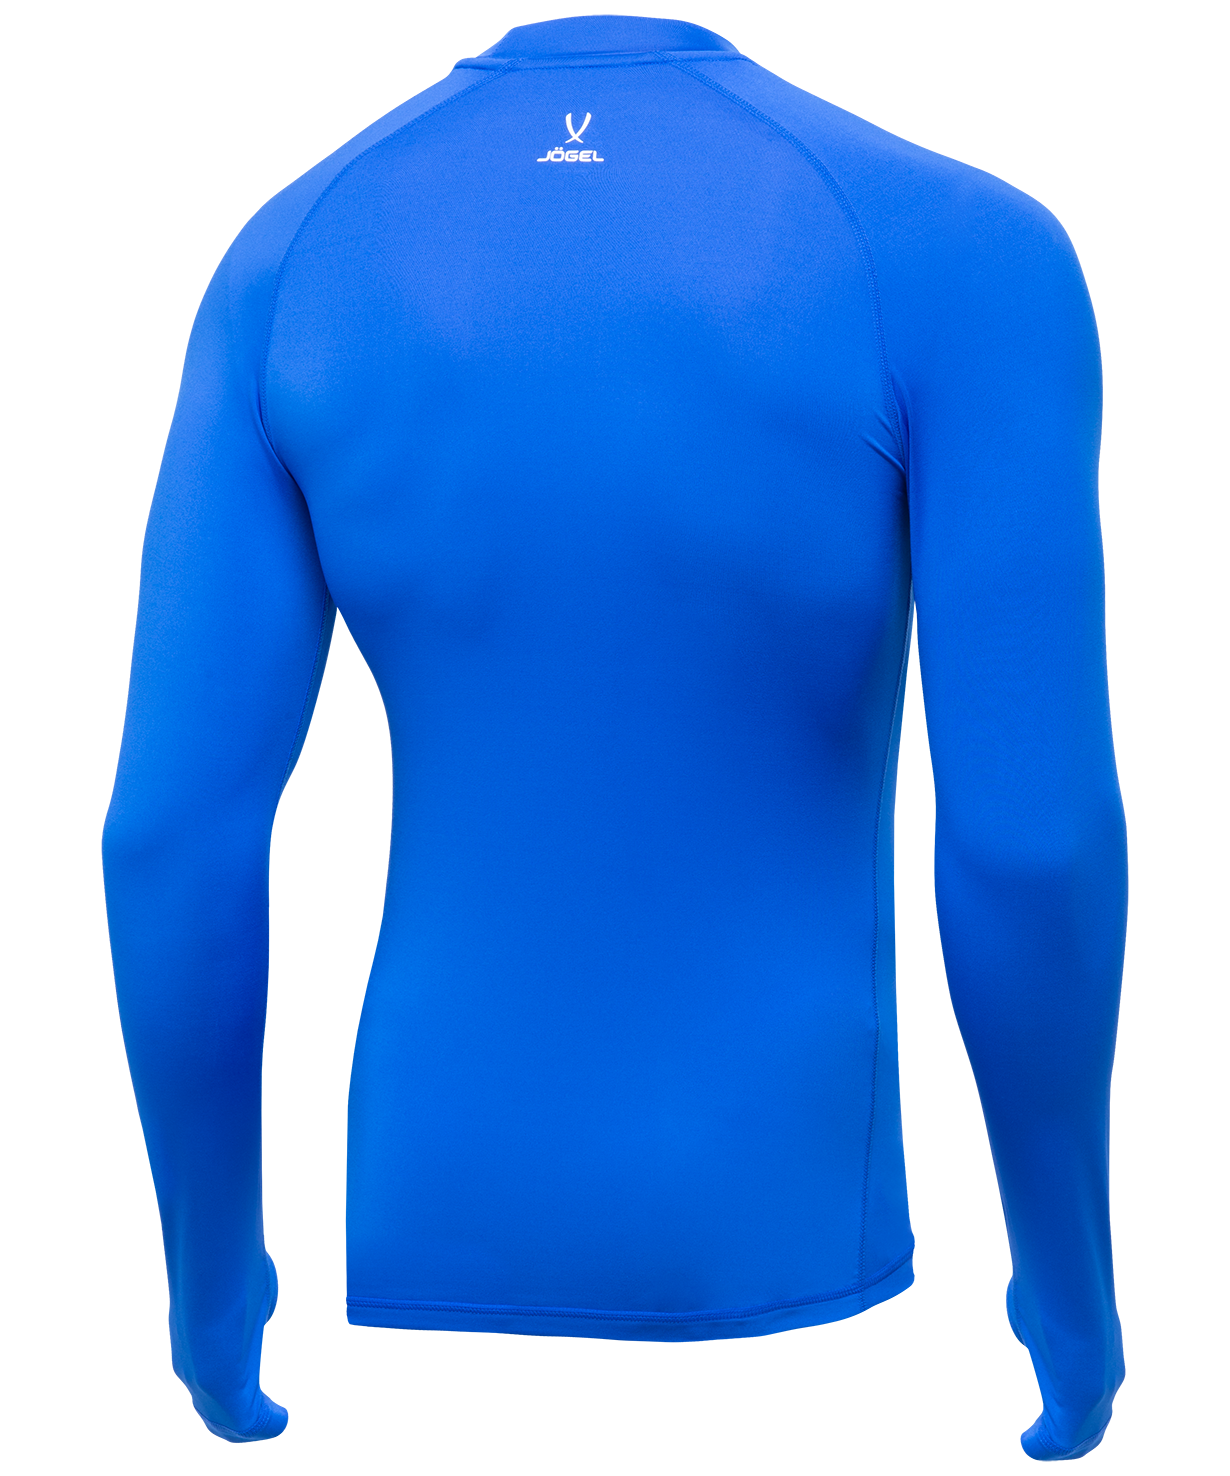 фото Jögel футболка компрессионная с длинным рукавом Camp PerFormDRY Top LS,синий/белый Football-54 